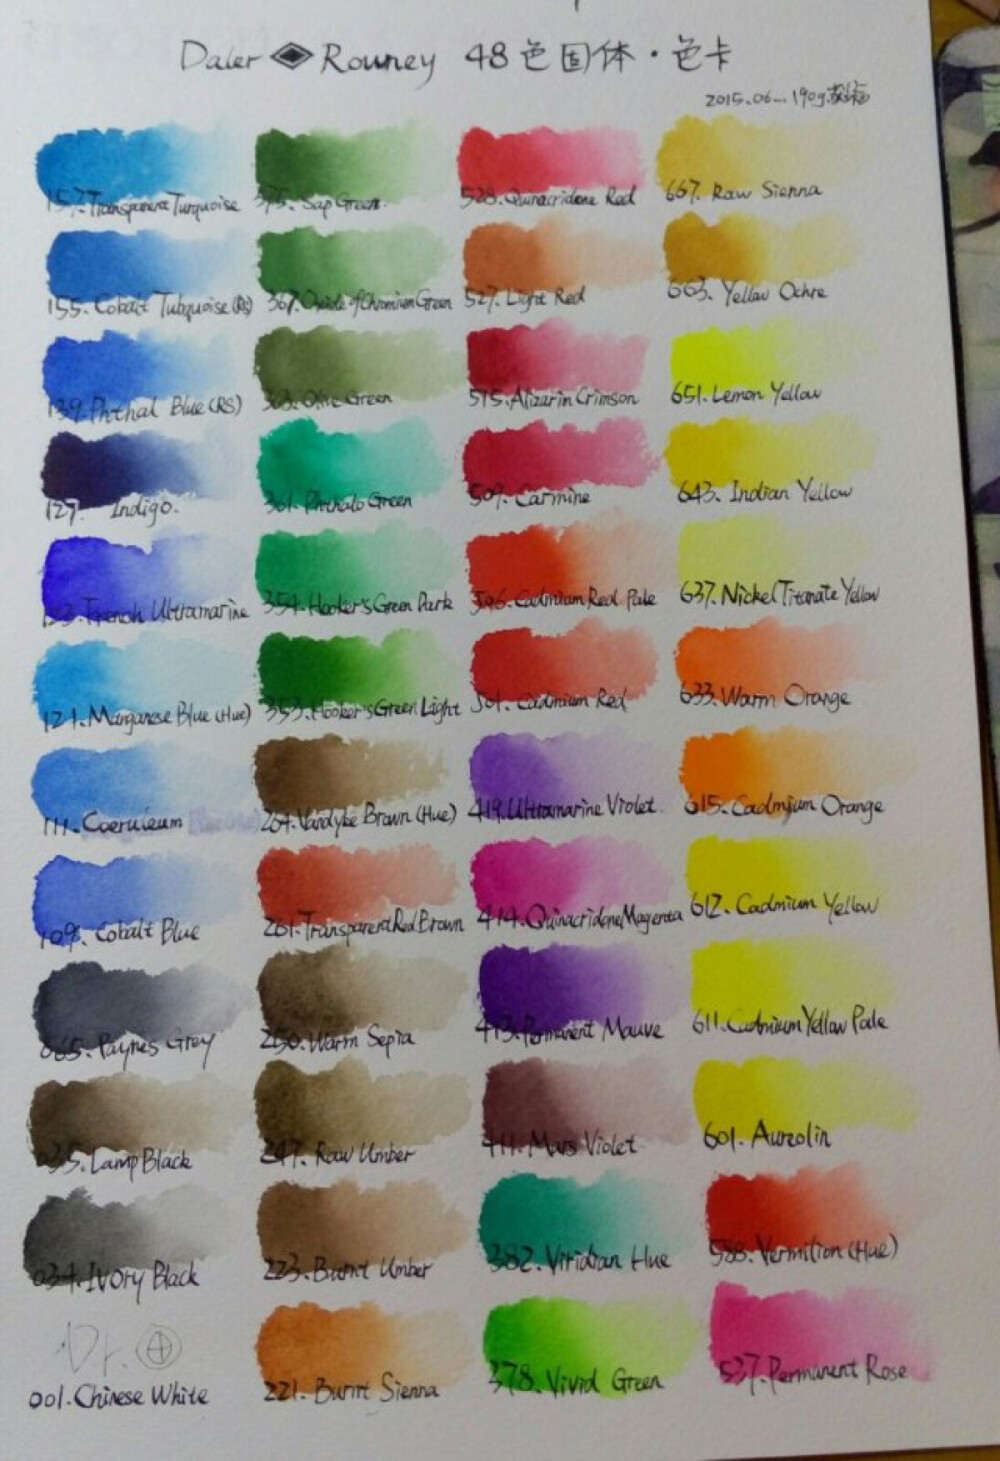 48种水彩笔颜色名称图片